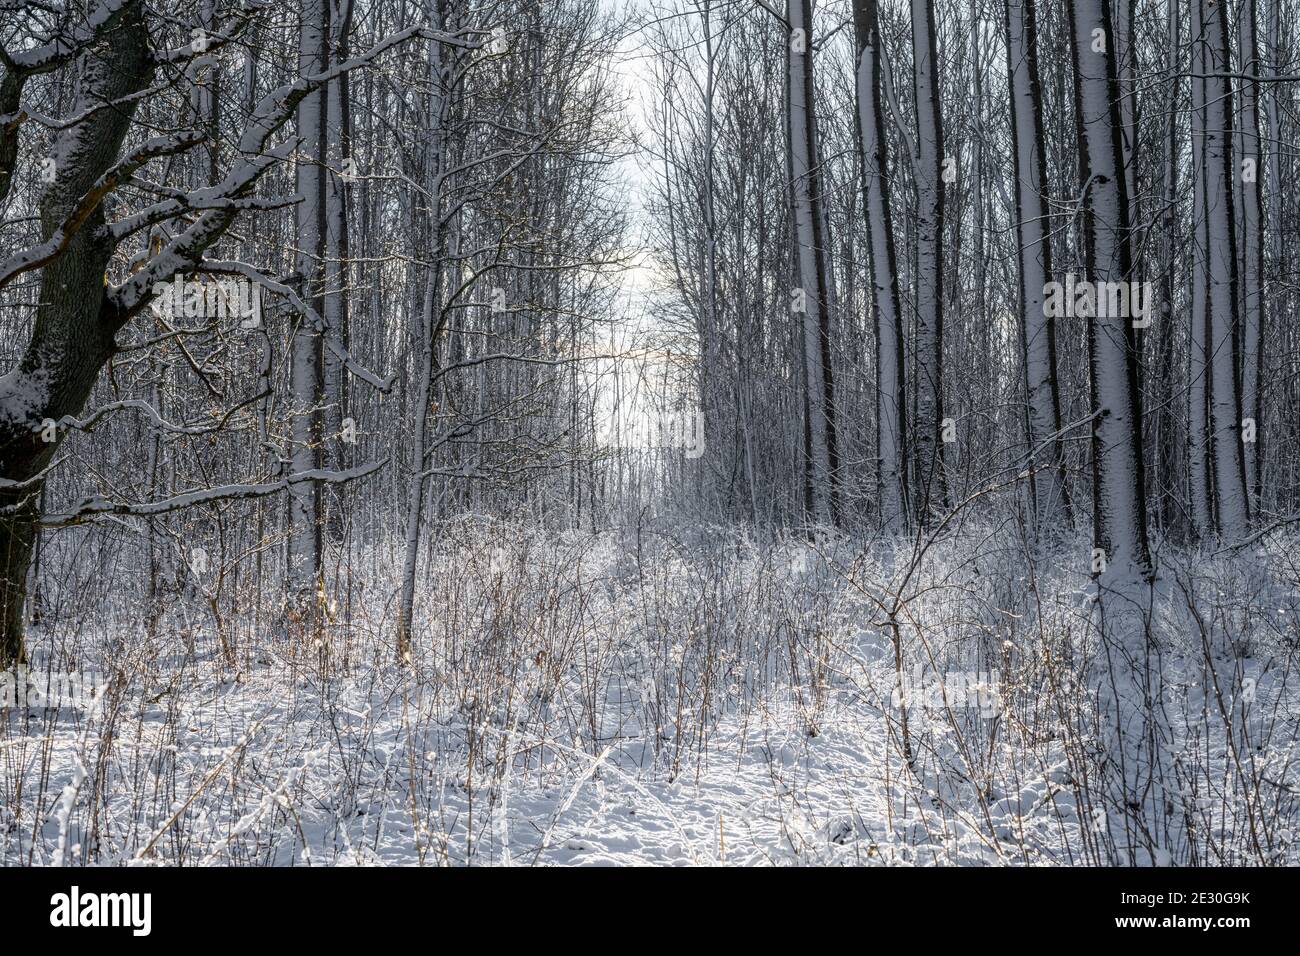 Una foto retroiluminada de un bosque brillante cubierto de nieve un día frío de invierno crujiente. Foto de Eslov, sur de Suecia Foto de stock